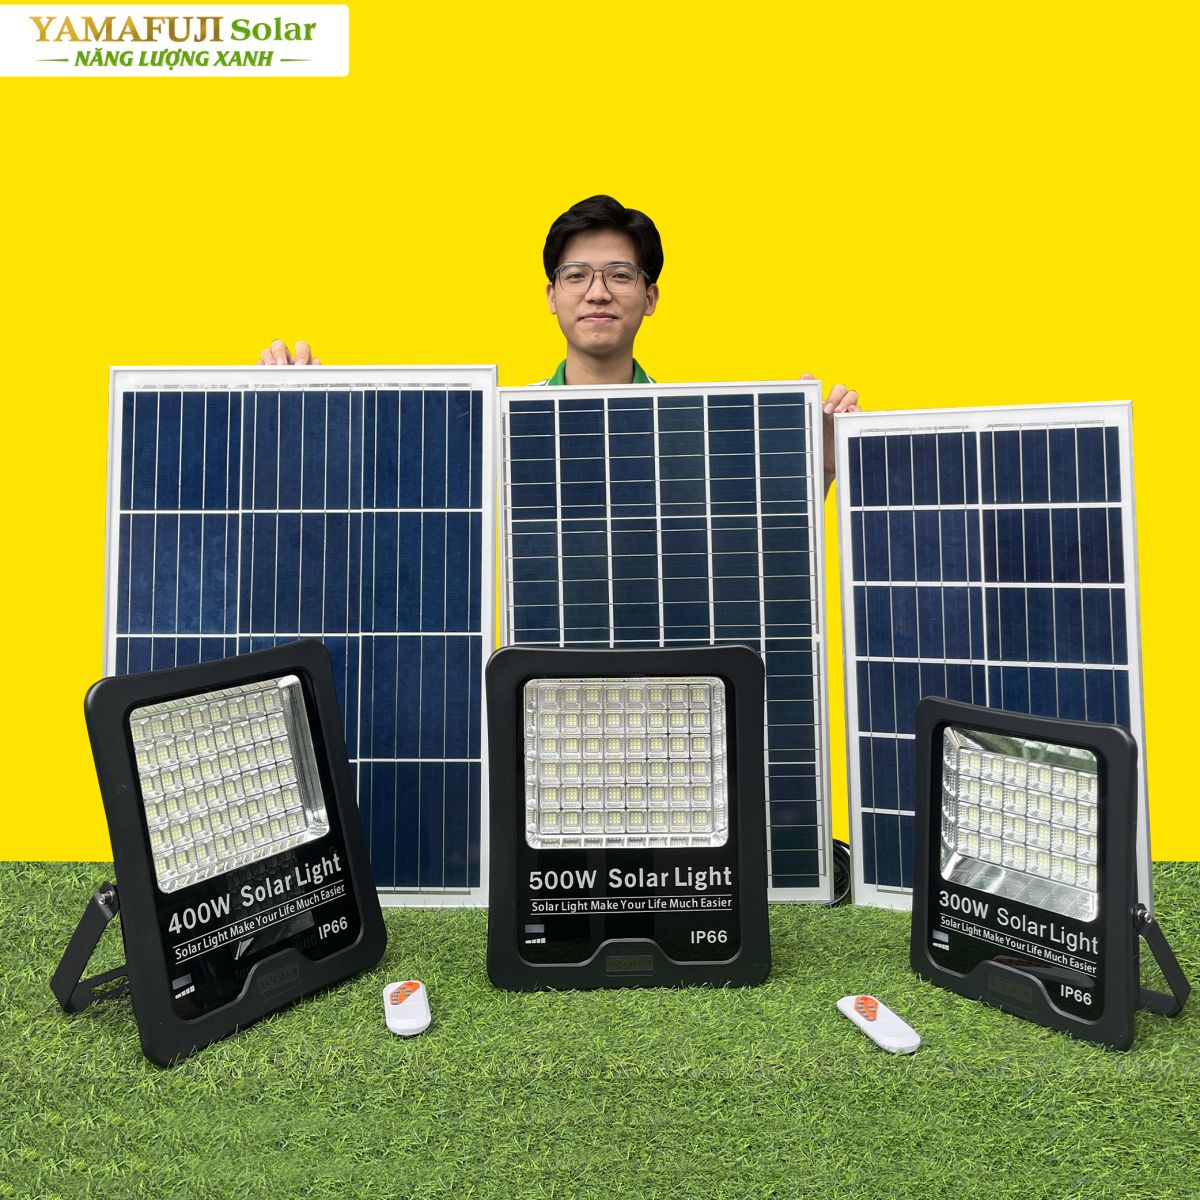 Đèn năng lượng mặt trời Yamafuji Solar SFL02-400W chính hãng